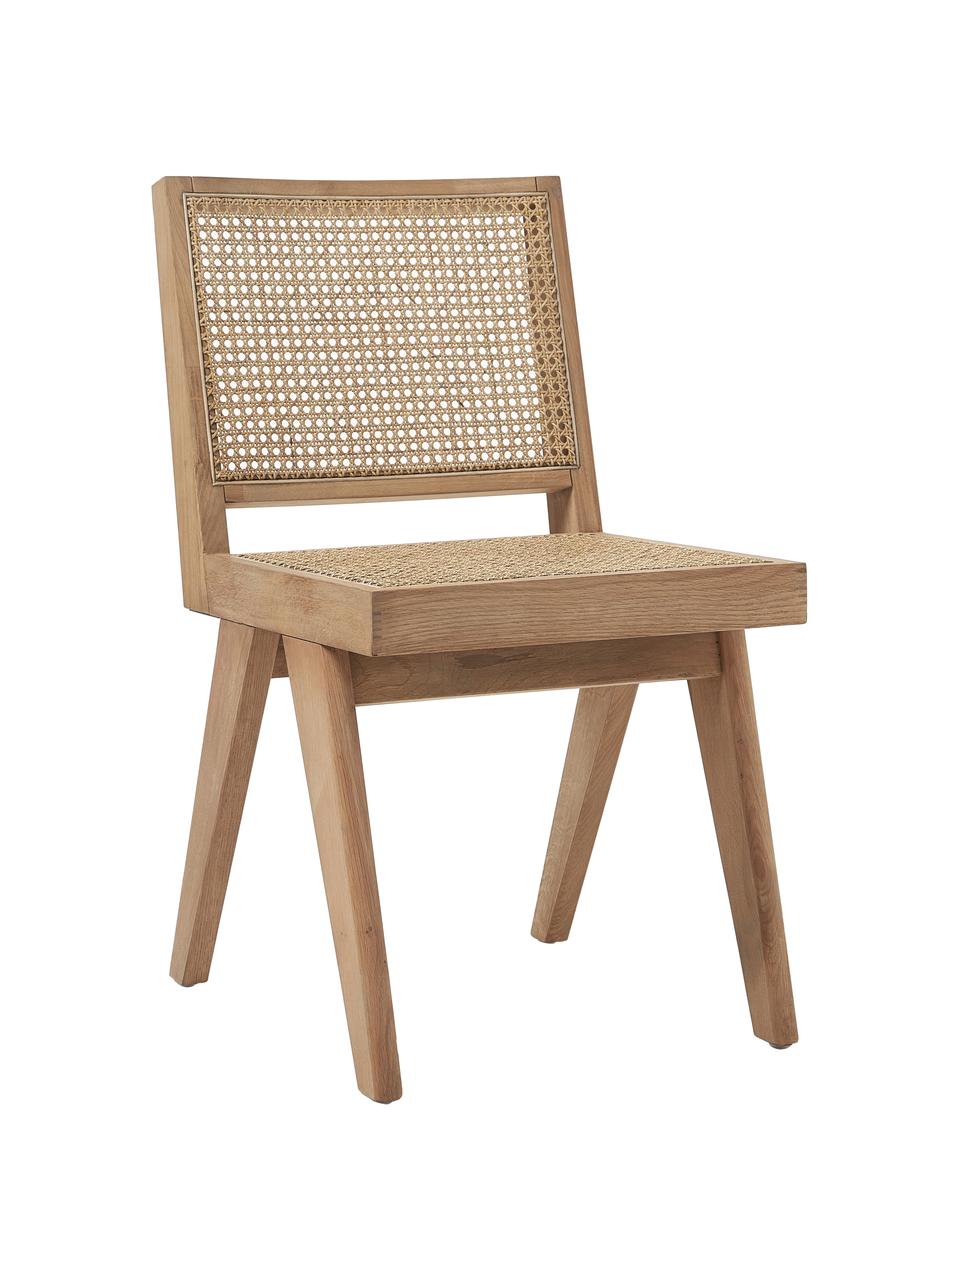 Drevená stolička s viedenským výpletom Sissi, Ratan, dubové drevo lakované, Š 46 x H 56 cm